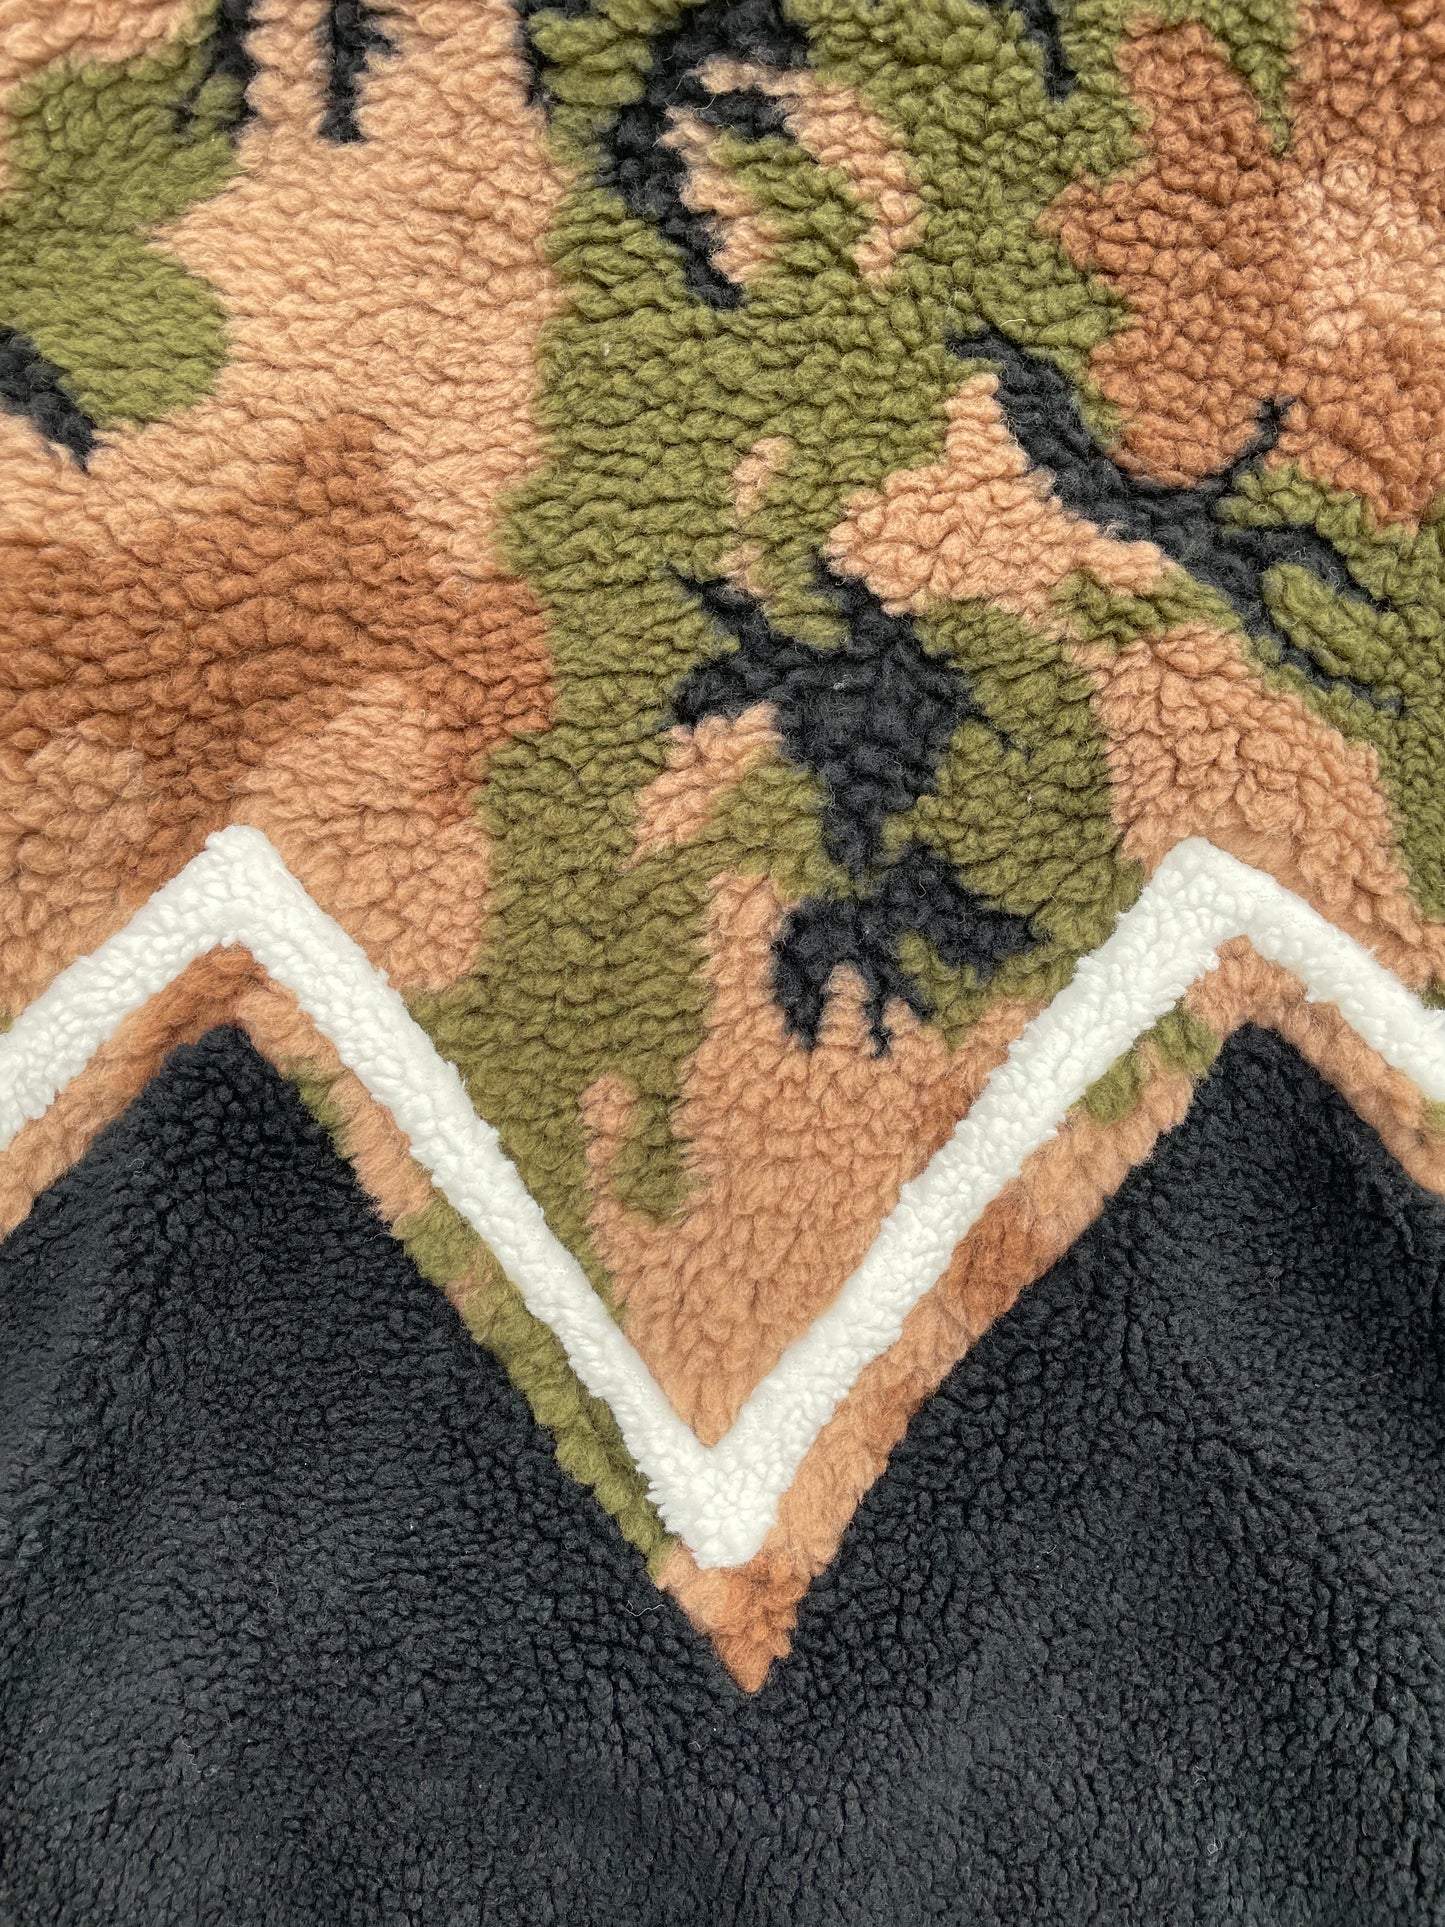 SS22 Celine By Hedi Slimane Shearling Camouflage Fleece Jacket